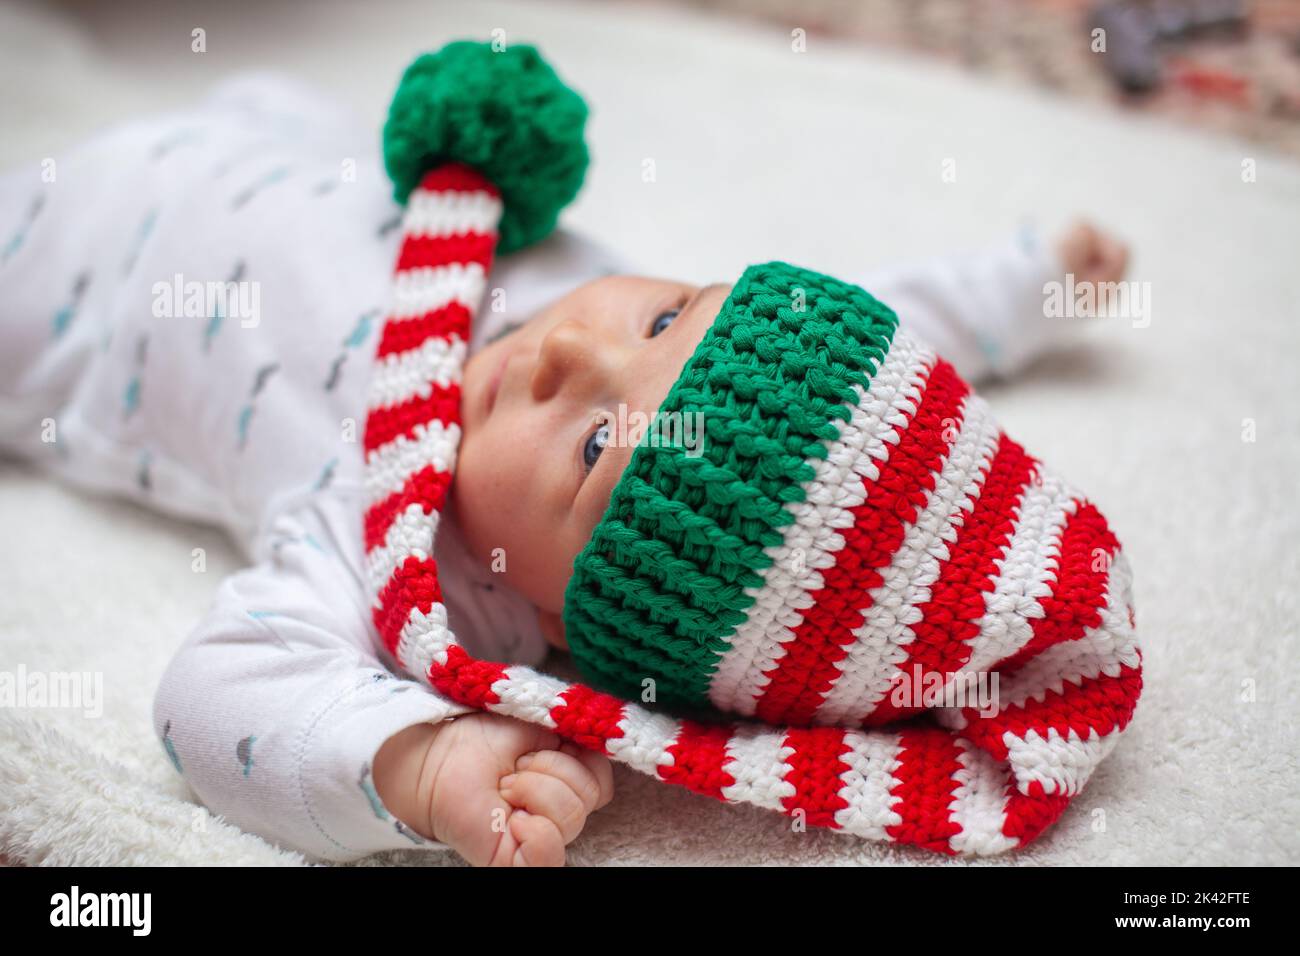 Kleines Baby in gestricktem roten weißen Hut auf roter Decke Stockfoto